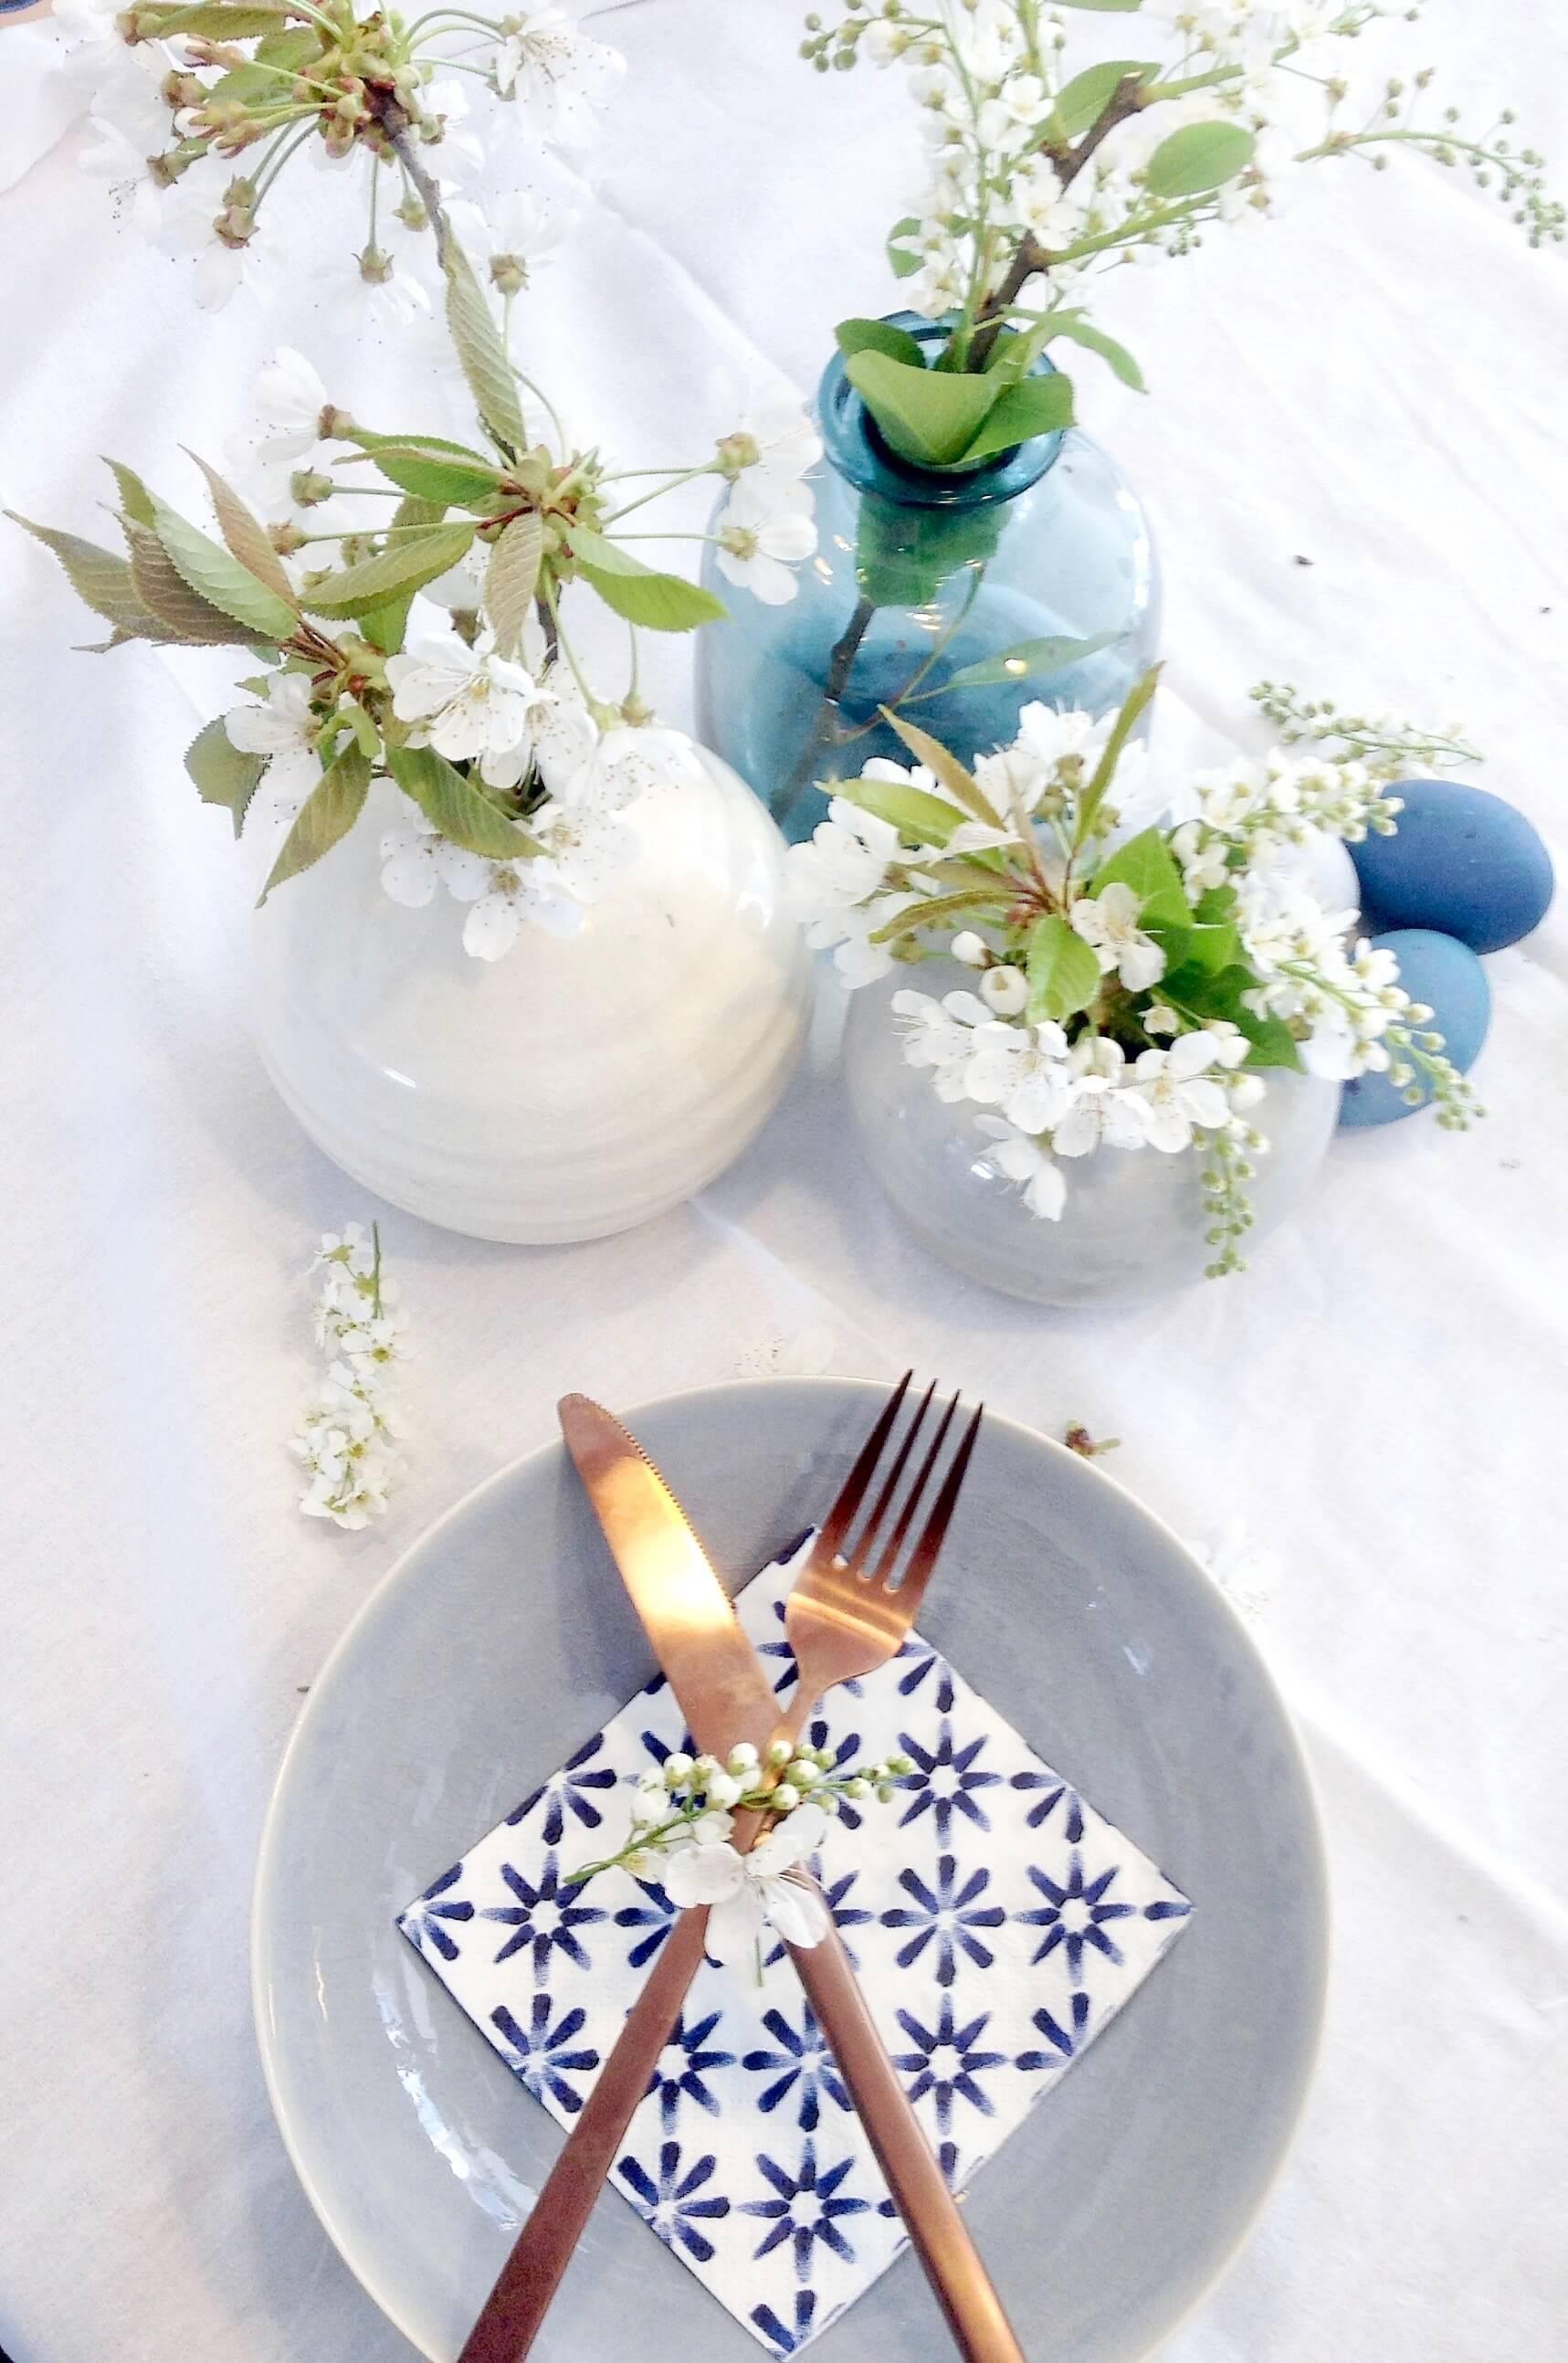 Tischdeko für Ostern in Blau

#frühlingsgefühle #tischdekoostern